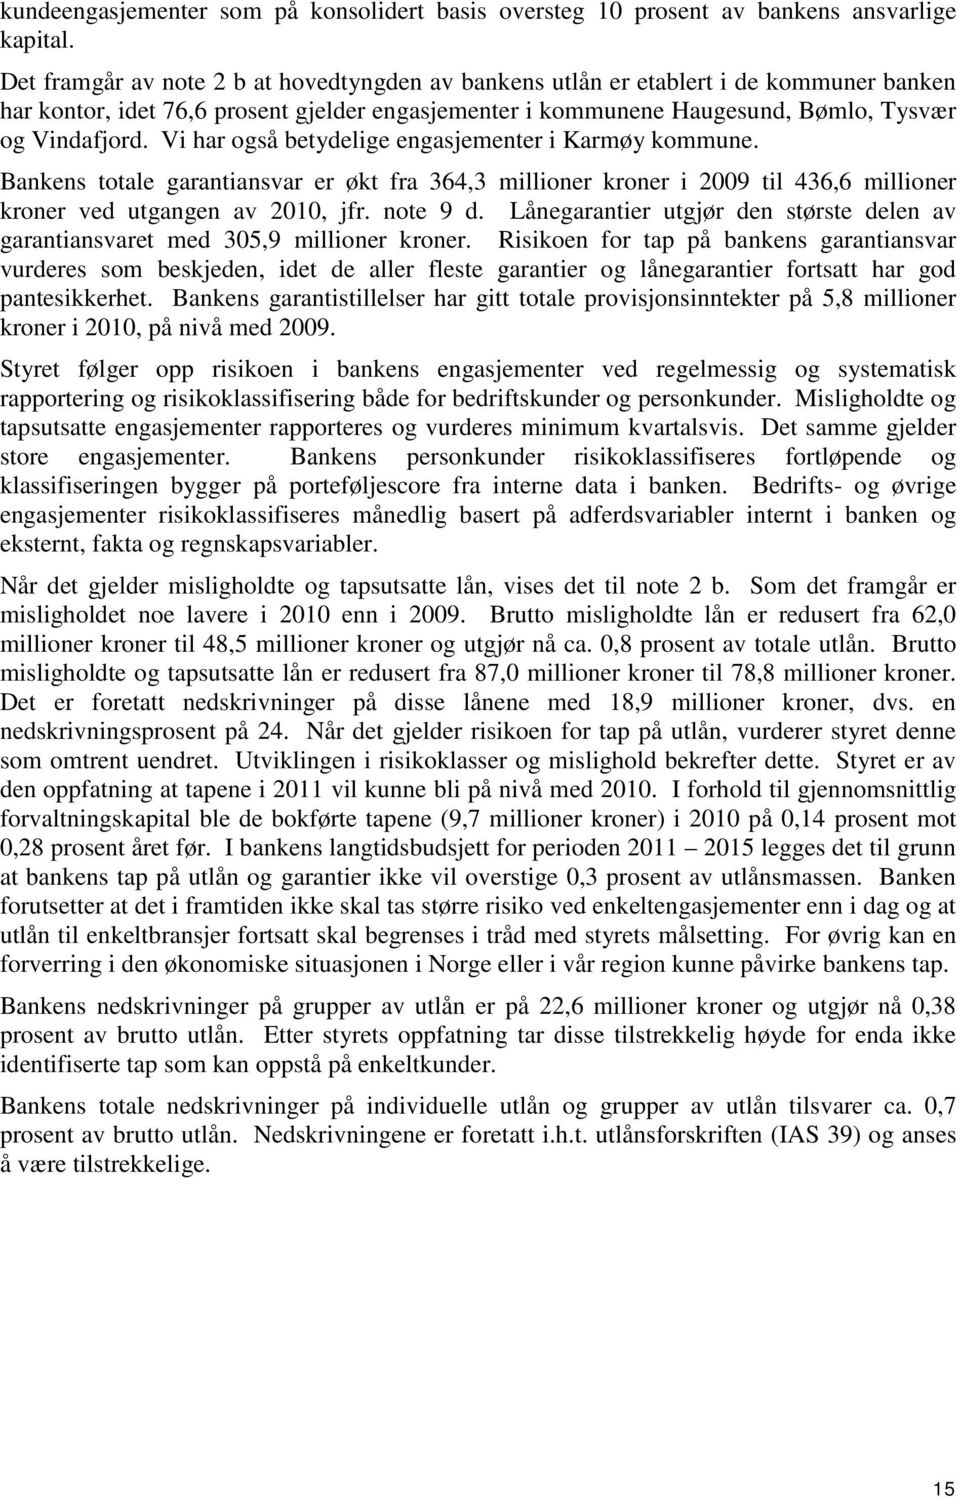 Vi har også betydelige engasjementer i Karmøy kommune. Bankens totale garantiansvar er økt fra 364,3 millioner kroner i 2009 til 436,6 millioner kroner ved utgangen av 2010, jfr. note 9 d.